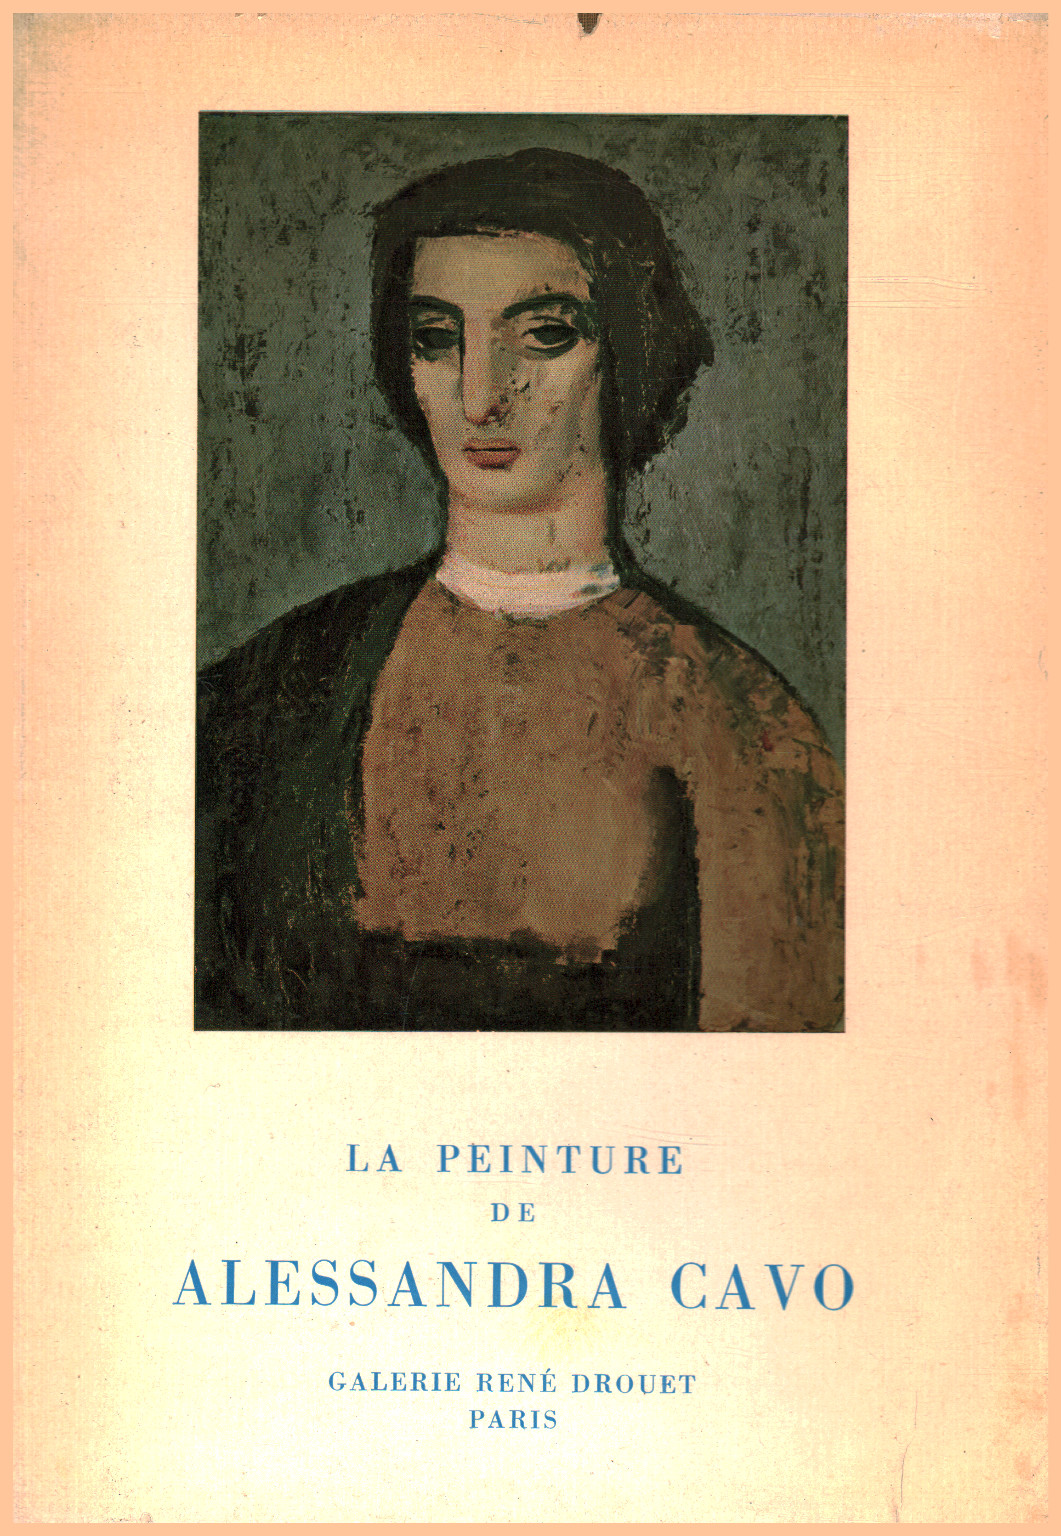 La peinture de Alessandra Cavo, s.a.